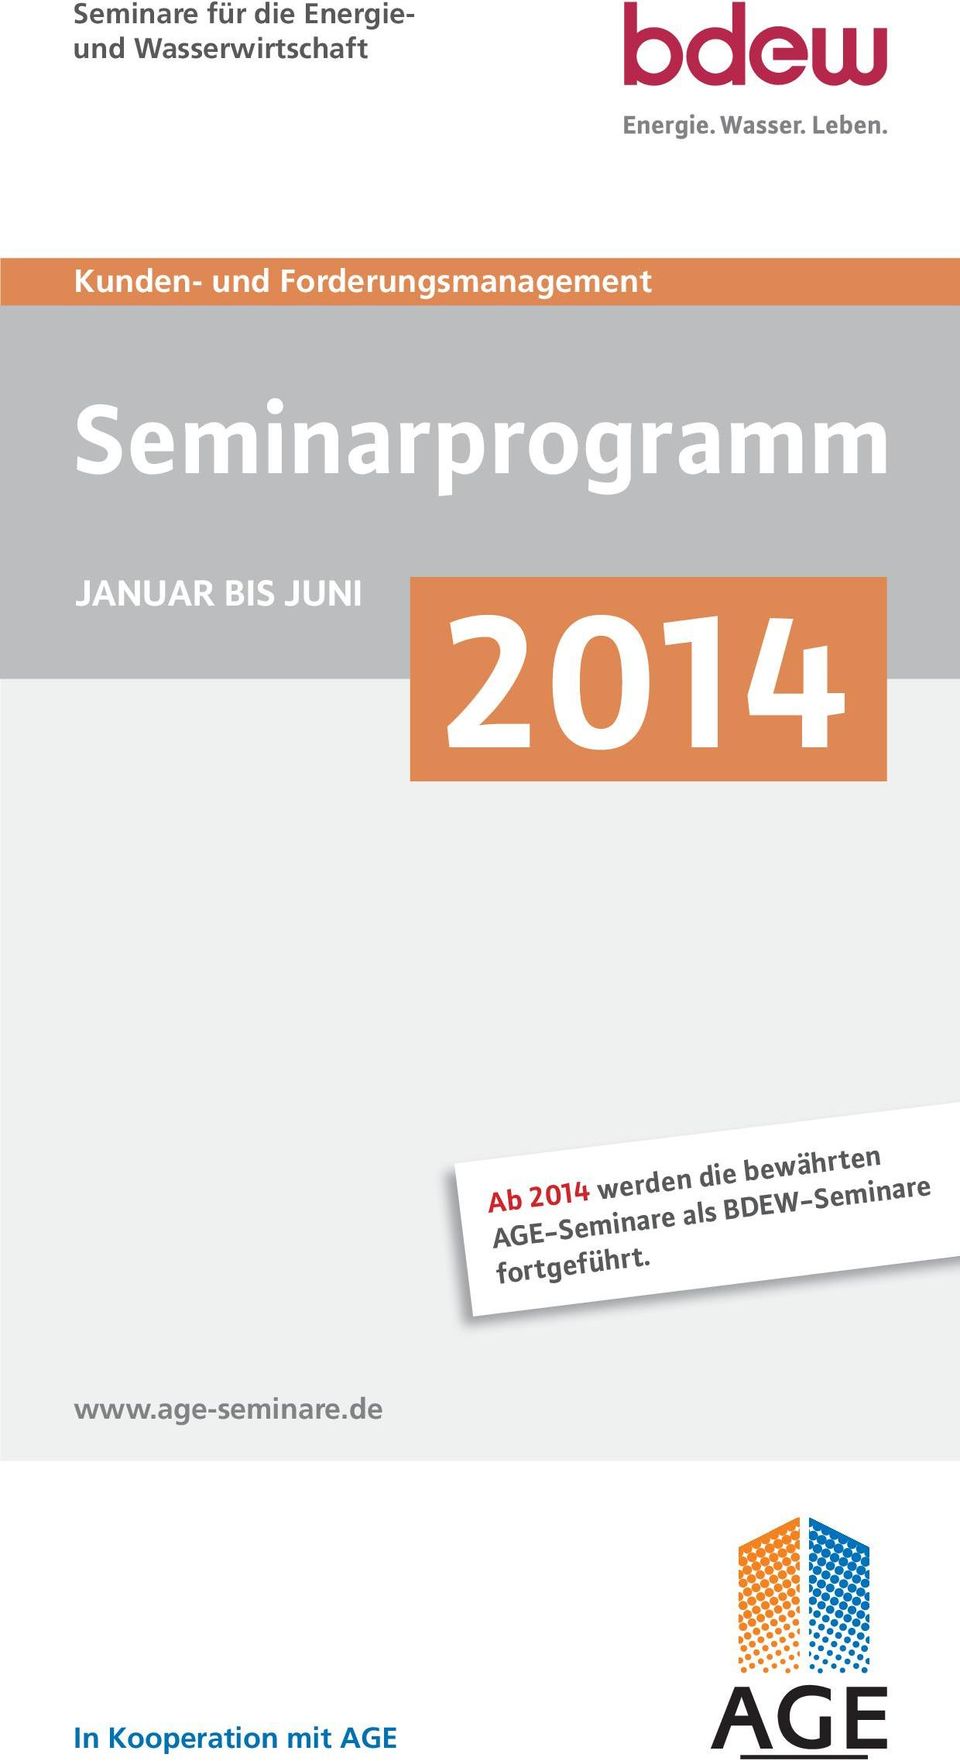 Ab 2014 werden die bewährten AGE-Seminare als